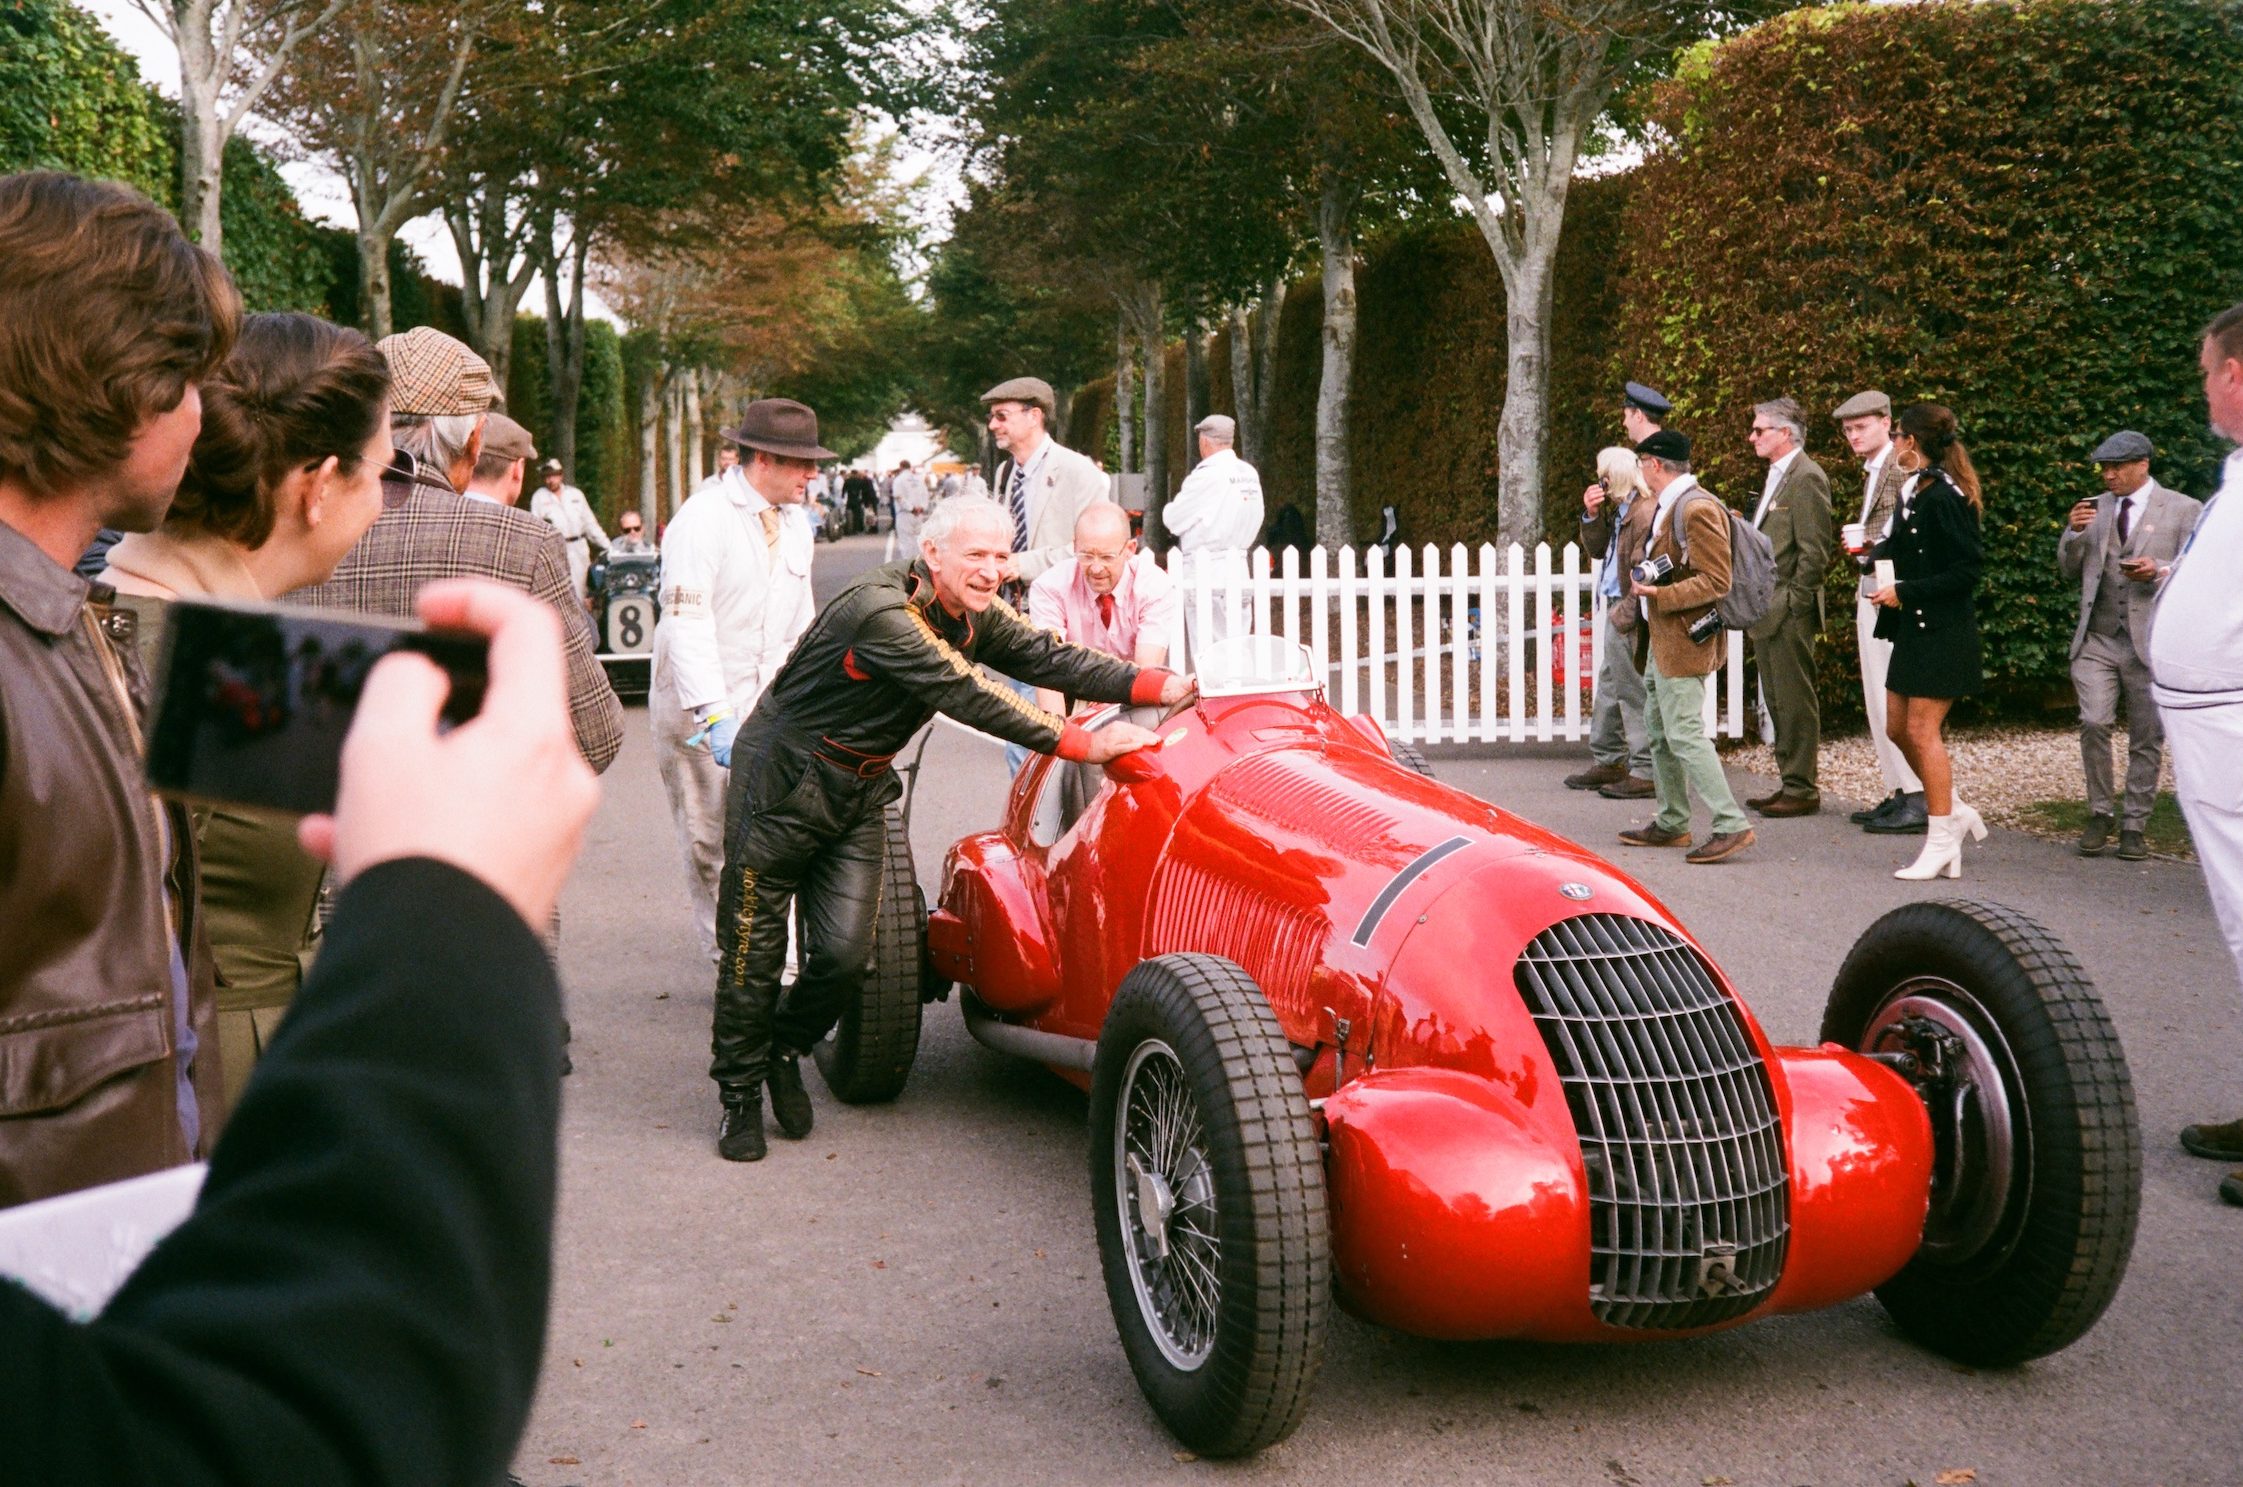 Goodwood Grand Prix car